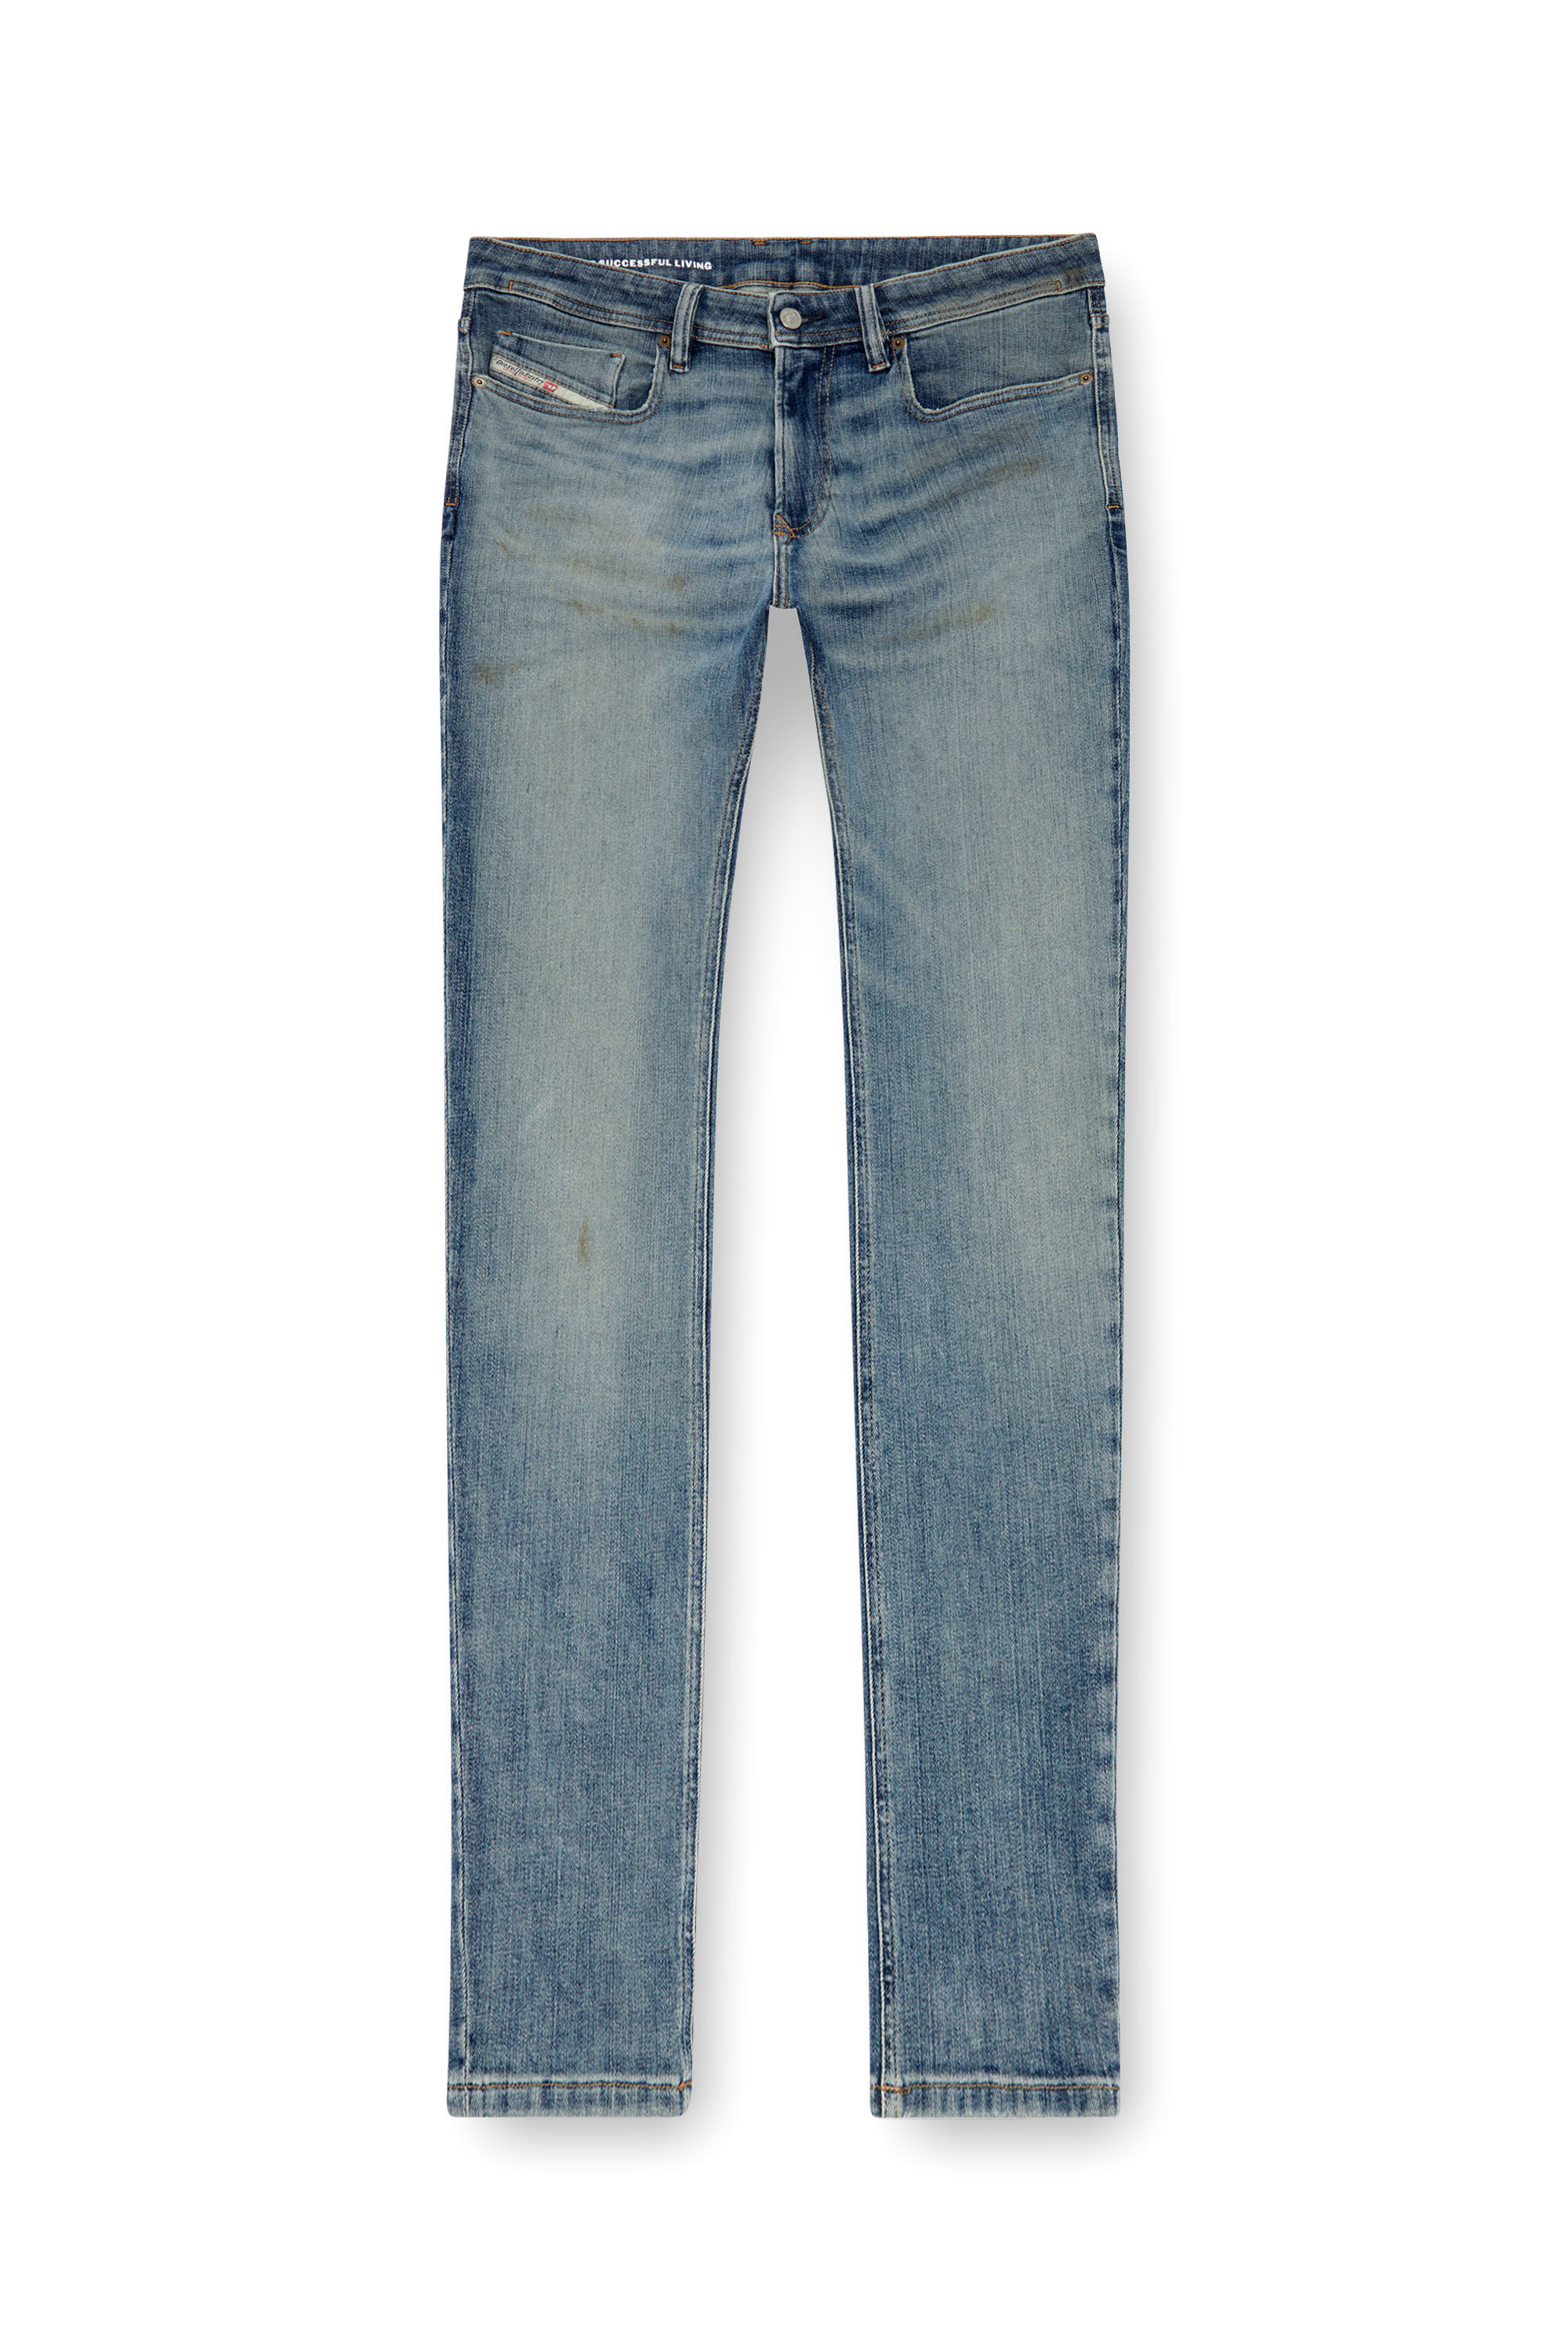 Diesel - Skinny Jeans 1979 Sleenker 0GRDE, Medium blue - Image 3